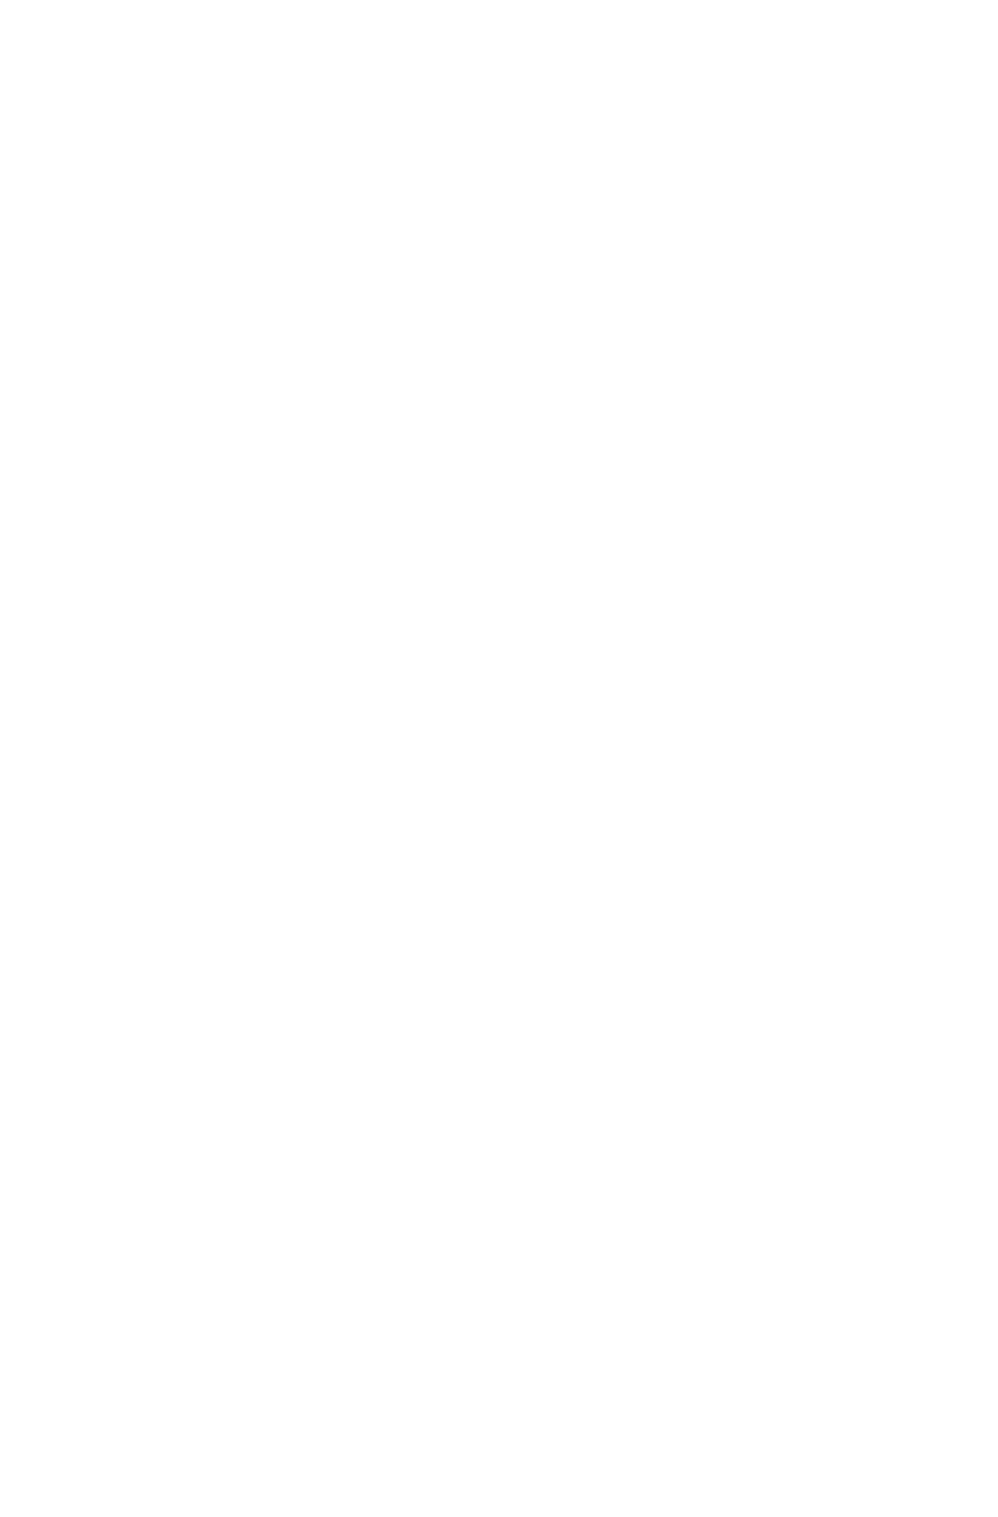 Al-Mazaya Holding Company logo large for dark backgrounds (transparent PNG)